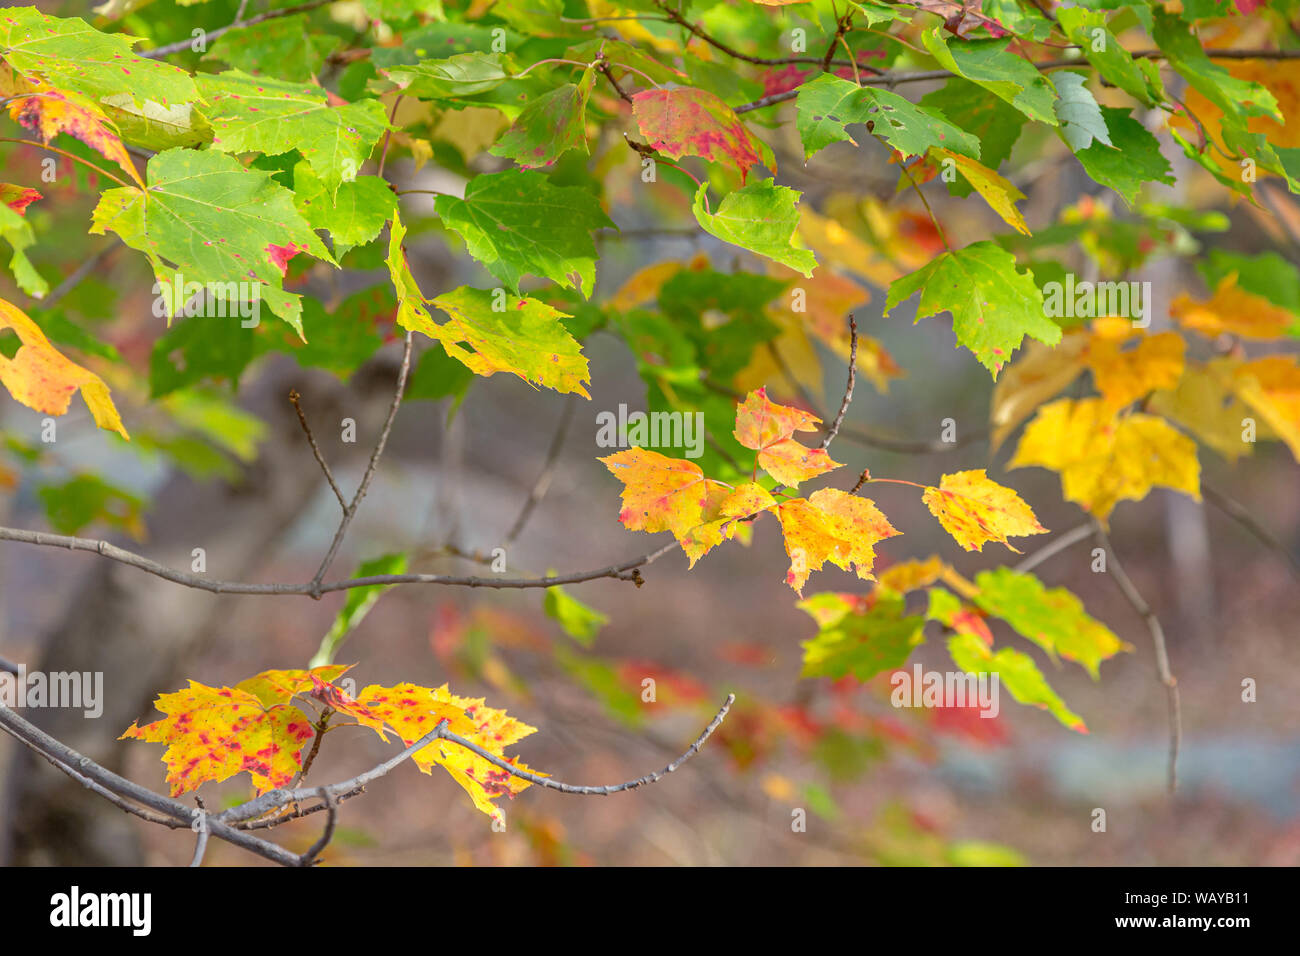 Ahorn Blätter in einem Zweig der Baumstruktur mit Oktober Herbst Farben Stockfoto